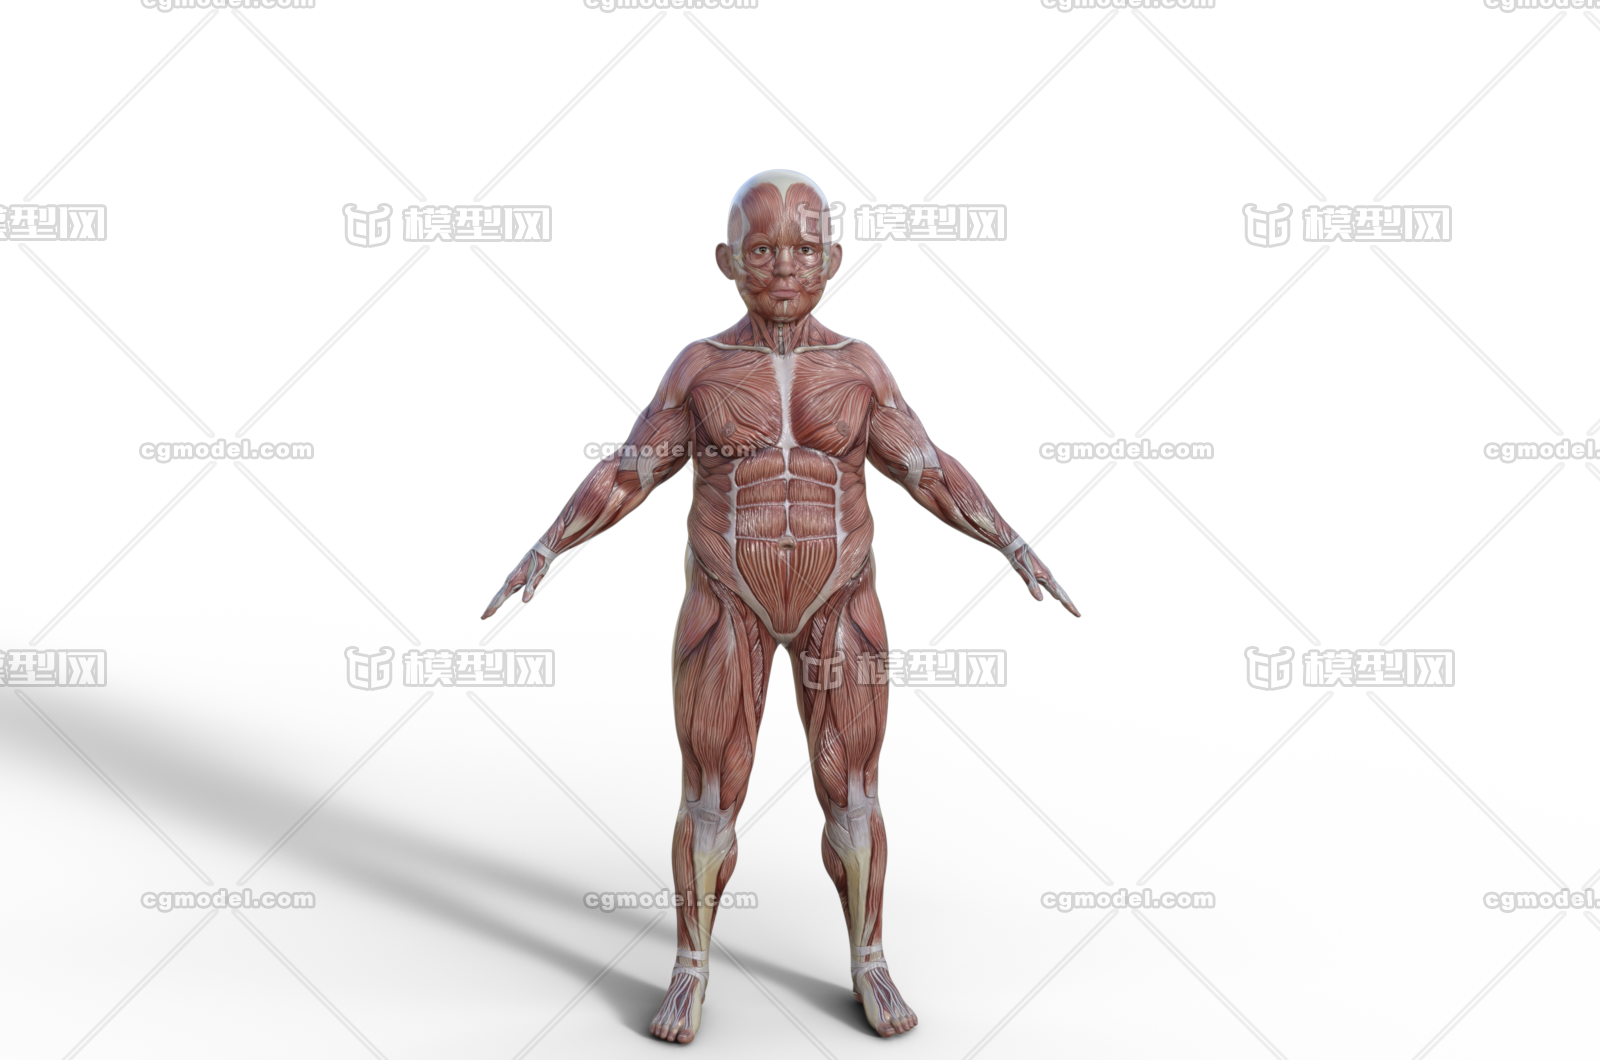 肌肉人体人体结构筋腱医学模型解剖人体男人体女人体 未成年人孩童 Cg模型网 Cgmodel 三维设计师交流互动平台 专注多品类3d模型下载 原创作品分享 软件学习